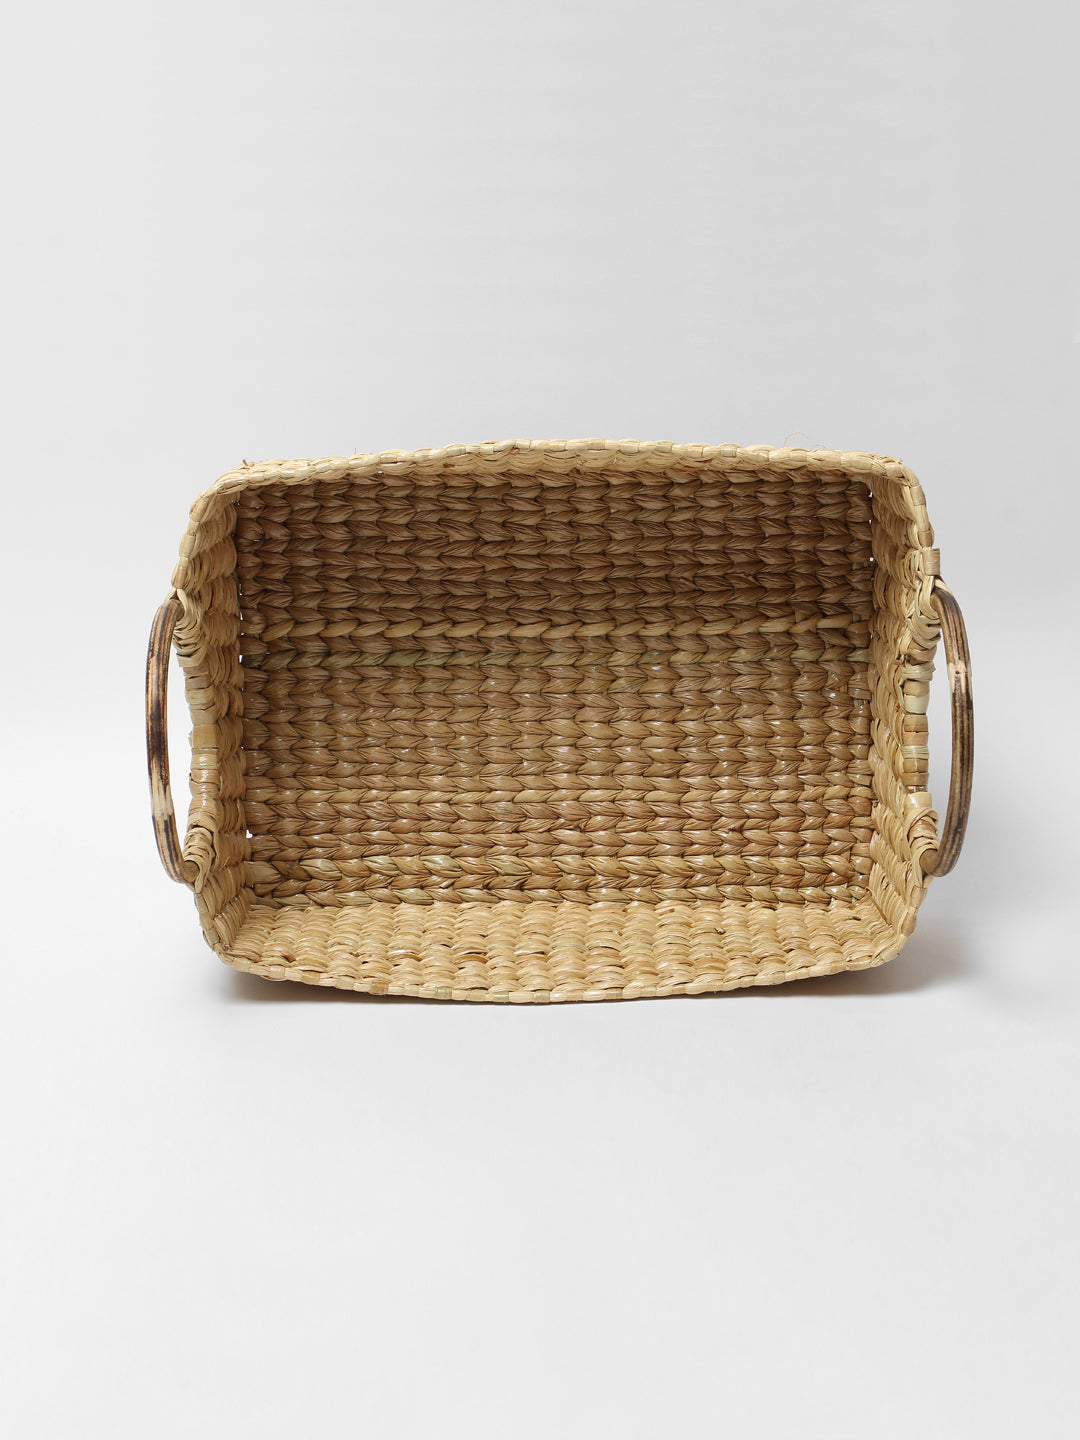 Seagrass Storage basket